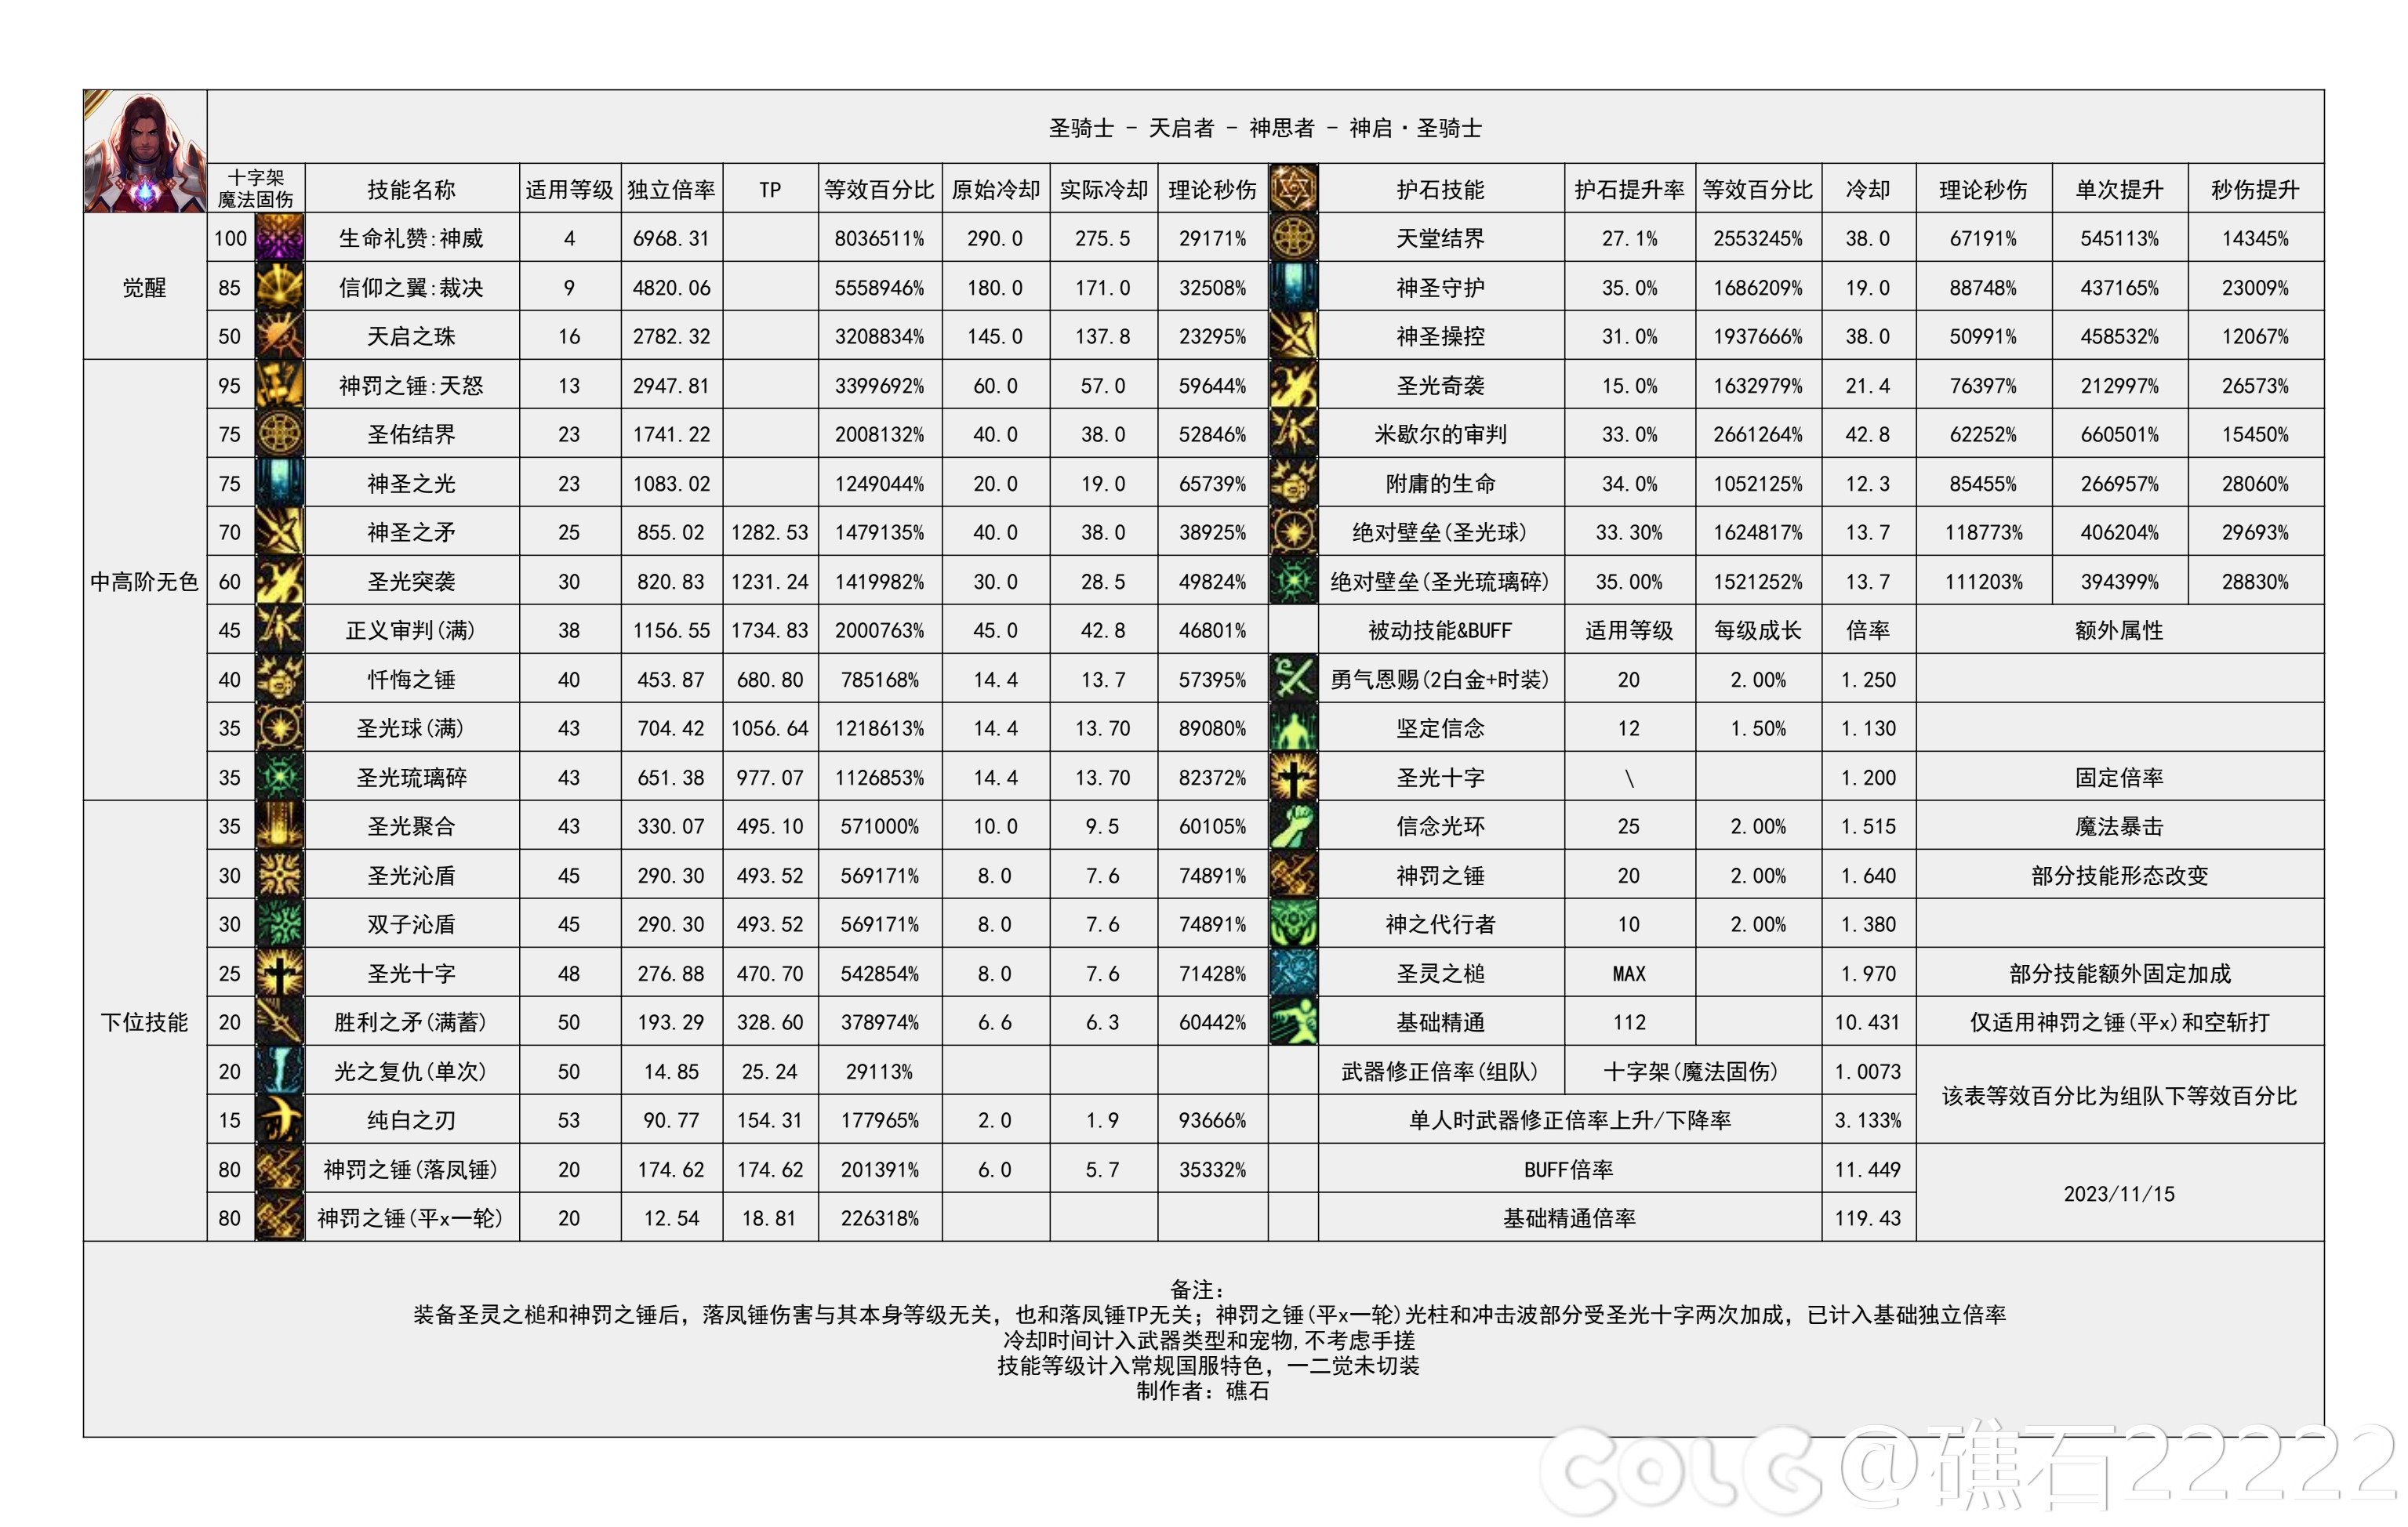 【国服现状】110版本输出职业数据表(国正5.15)(最新)50